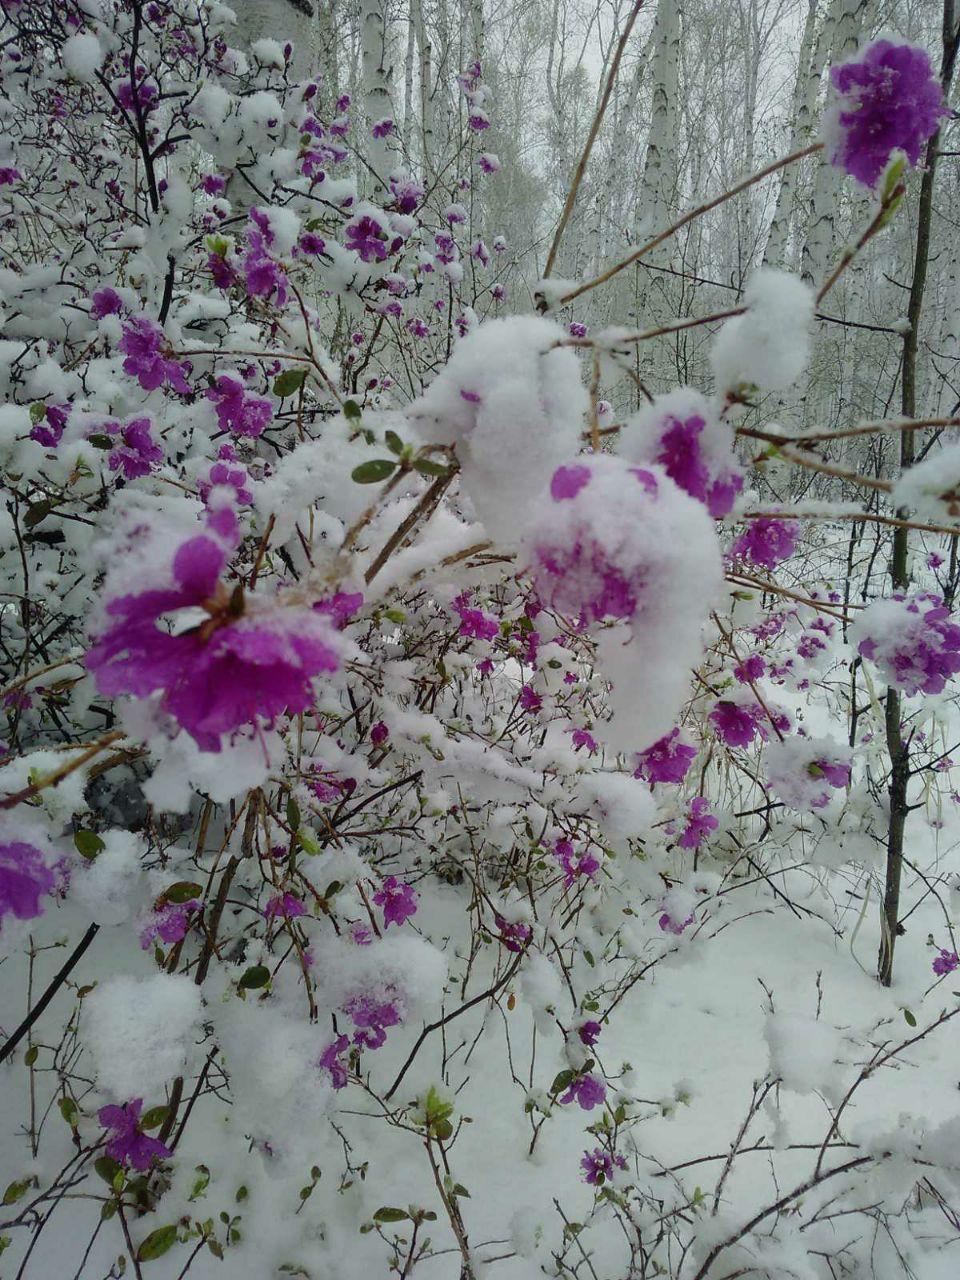 Резкоконтинентальное Забайкалье - оно такое. Майский снег припорошил цветущий багульник. Фото отправил наш читатель.